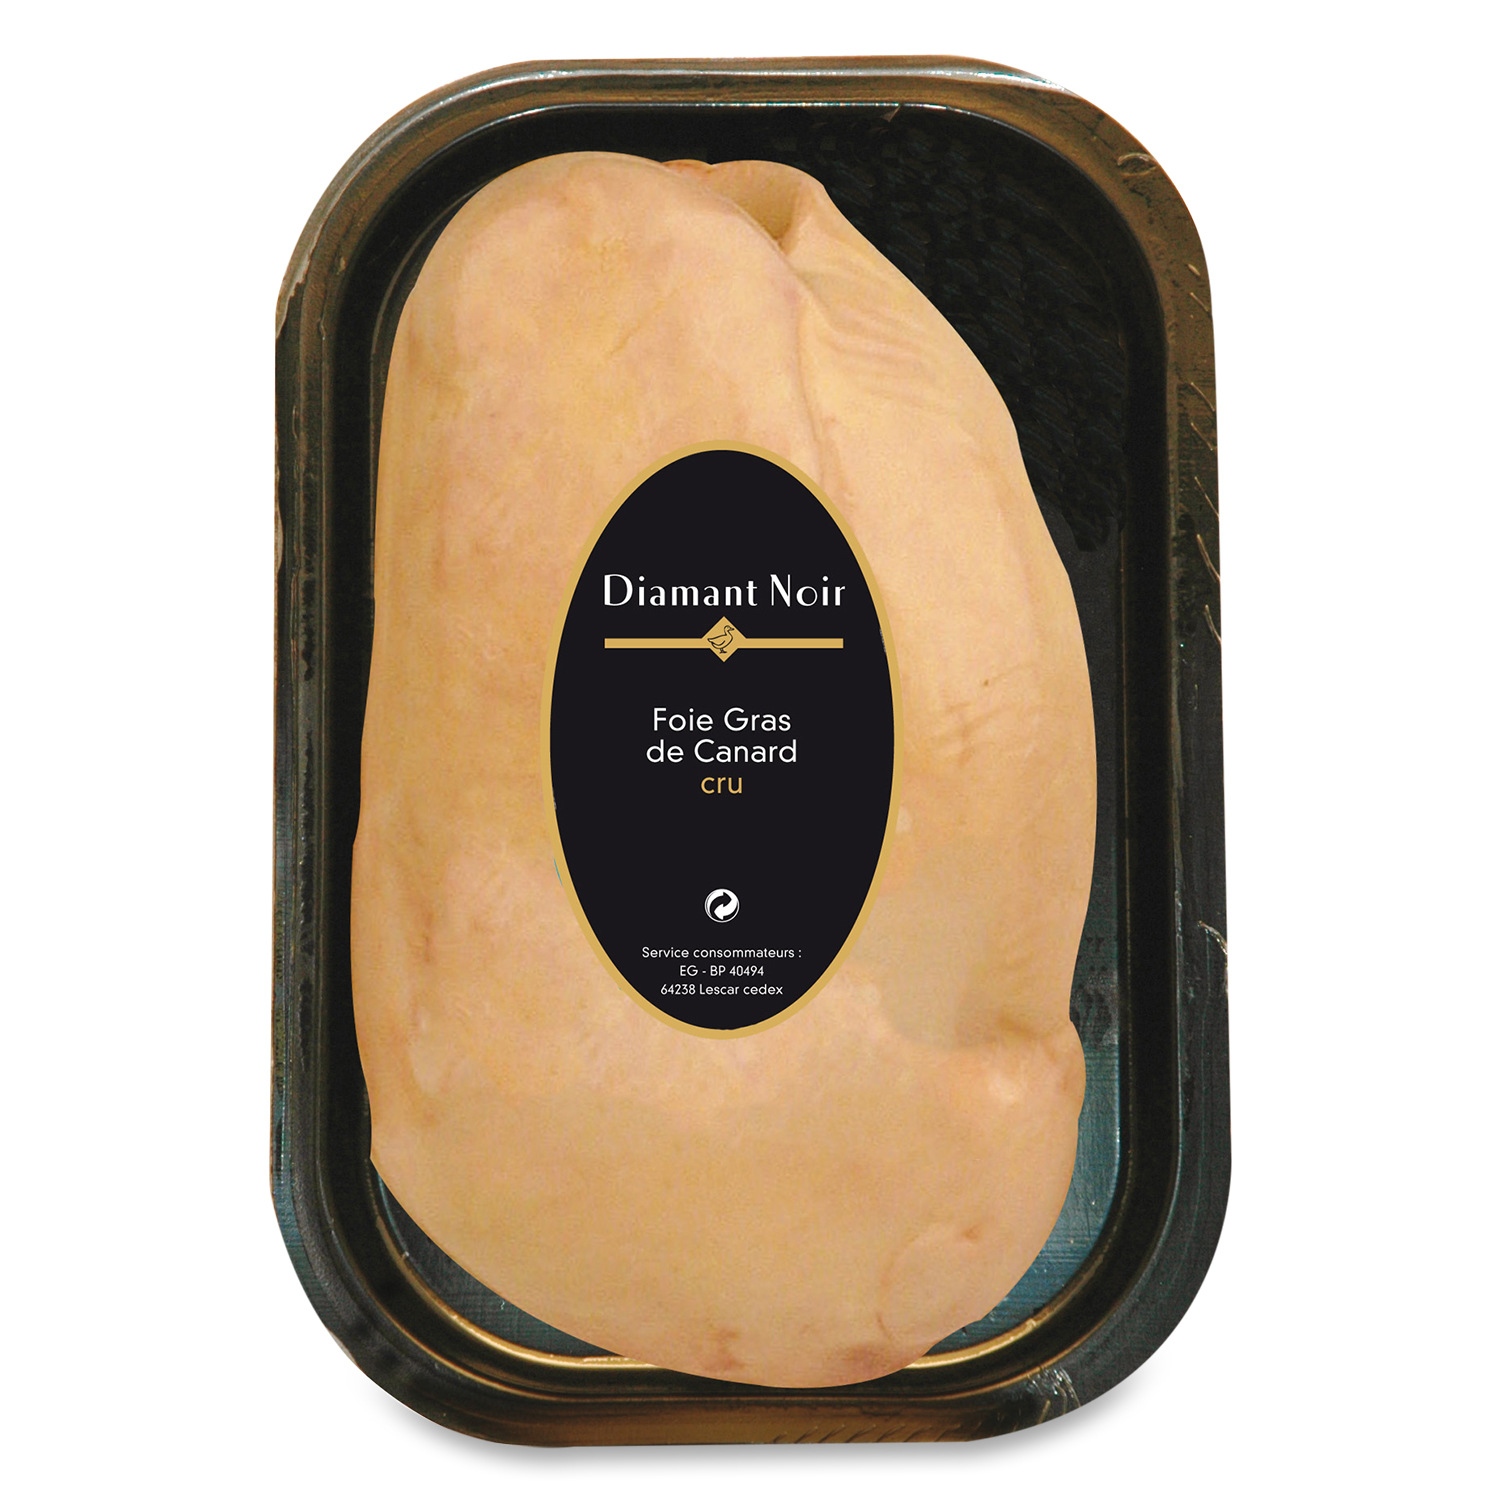 Foie gras de canard cru Extra